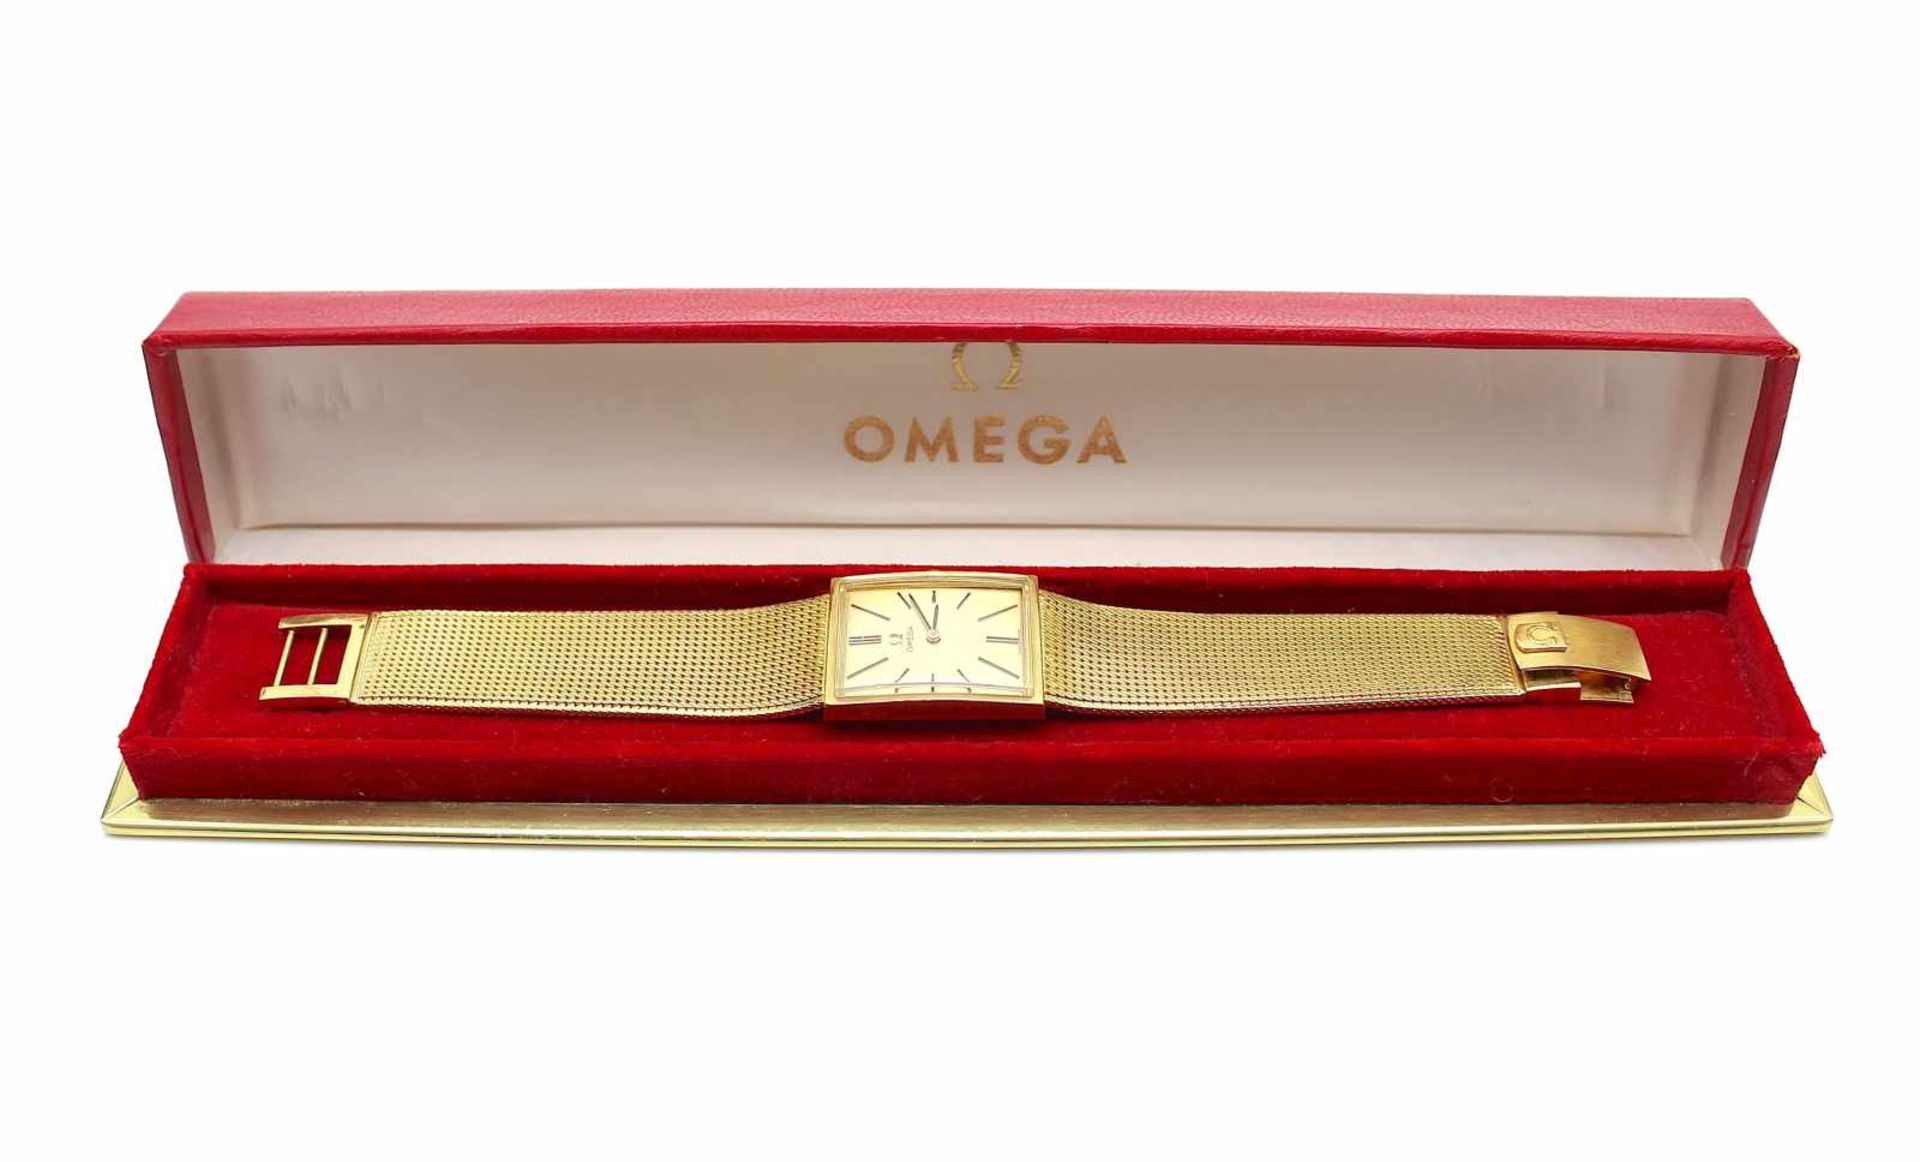 Armbanduhr Omega aus 750er Gold im Omega Etui. Die Uhr ist gangbar. Eine Revision wird empfohlen. - Image 3 of 4